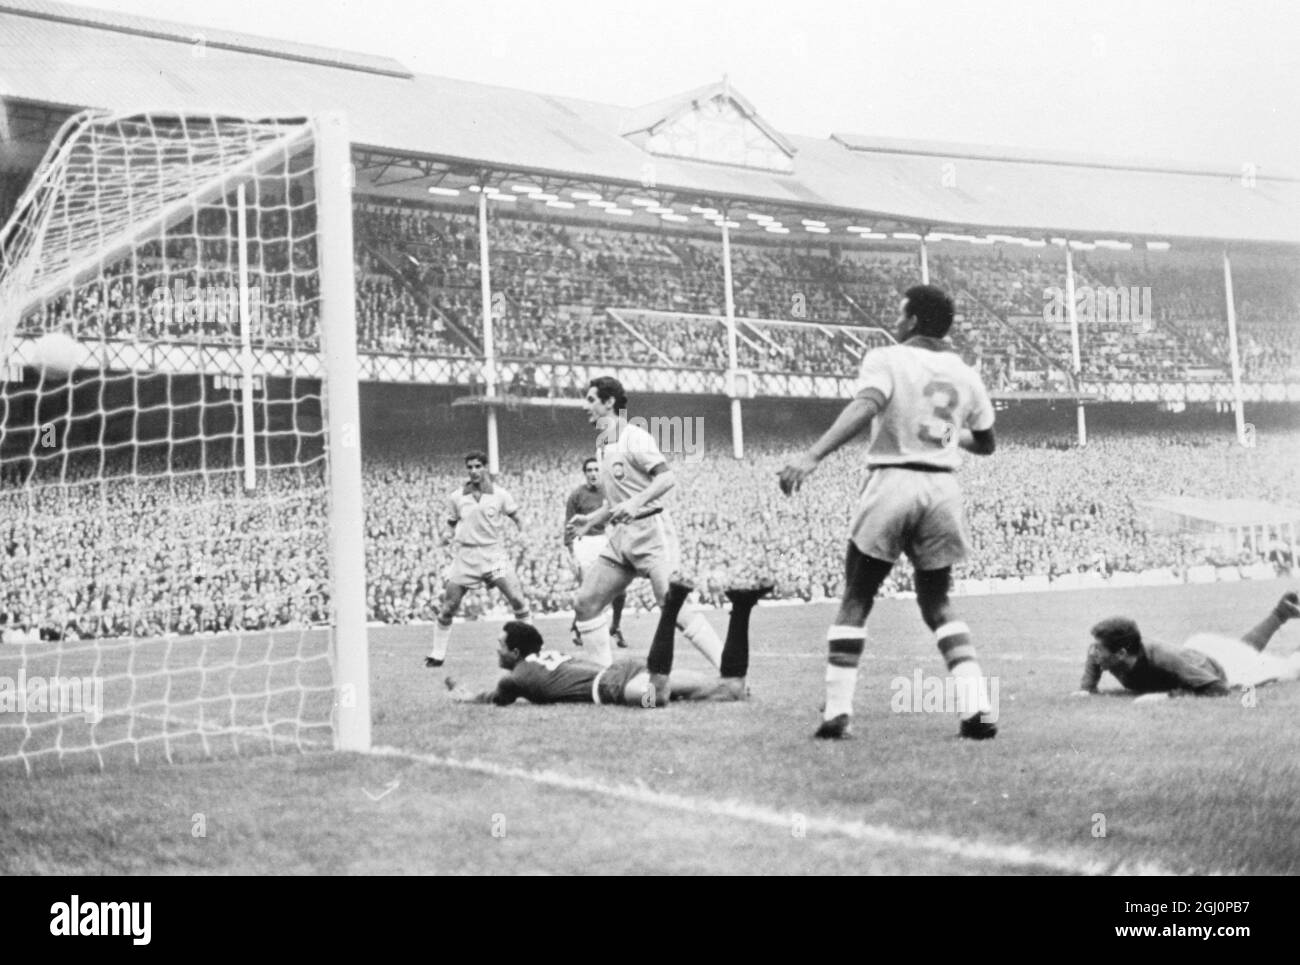 Simoes (rechts, am Boden) ist abgebildet, das Portugal beim Weltcup-Spiel gegen Brtazil das erste Tor erzielte. Ebenfalls hier identifiziert sind der brasilianische Spieler Fidelis (No 3) und Torhüter Manga (No 12) am Boden. Portugal gewann 3-1 , die anderen beiden Tore von Eusebio erzielt . Liverpool, 19. Juli 1966 Stockfoto